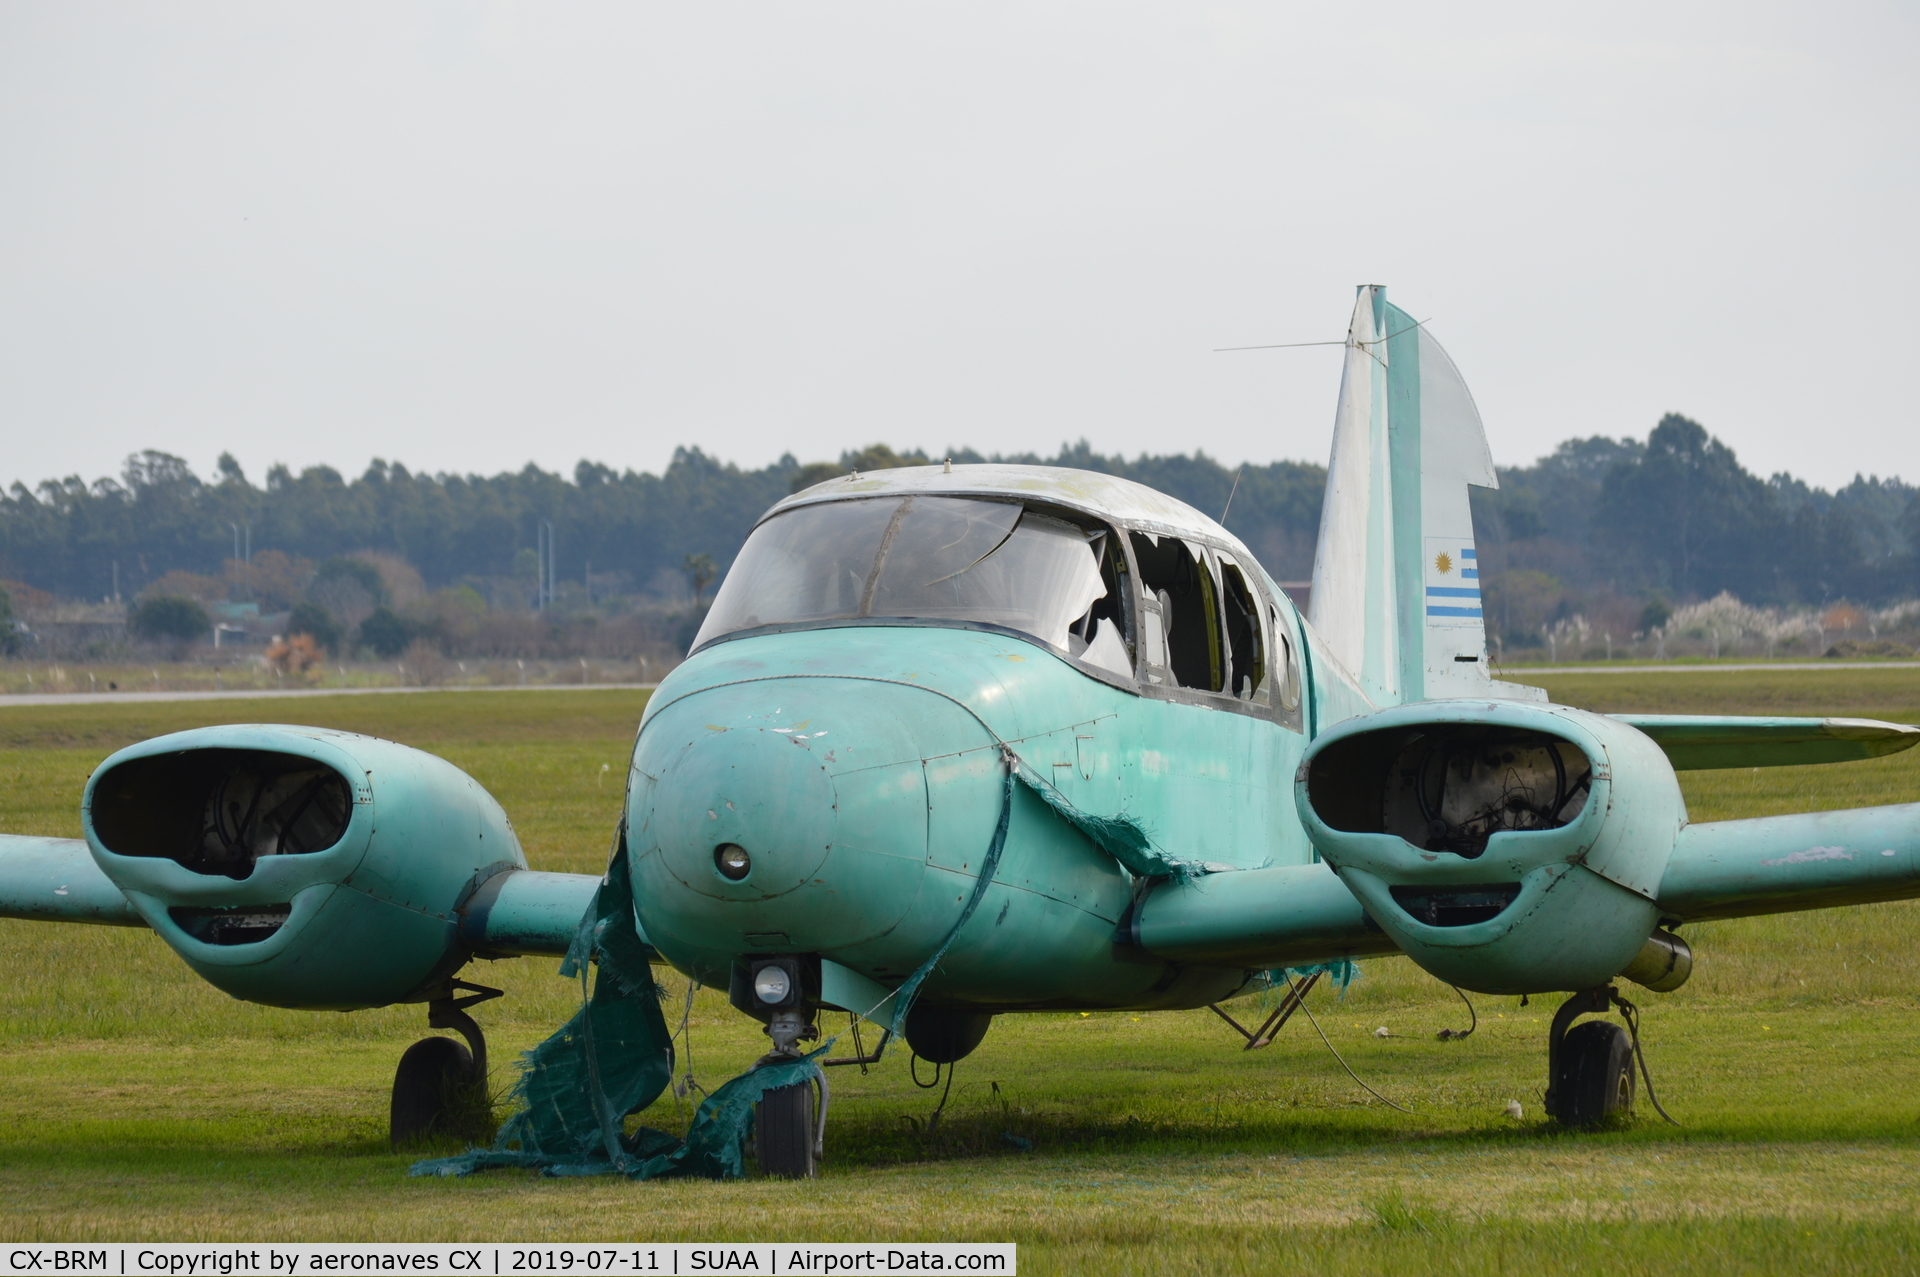 CX-BRM, 1957 Piper PA-23-150 Apache C/N 23-889, fuselaje en SUAA (Aeropuerto Int. Ángel S. Adami) luego de un accidente en el año 2002 en SUMU (Aeropuerto Int. Cesáreo Berisso)